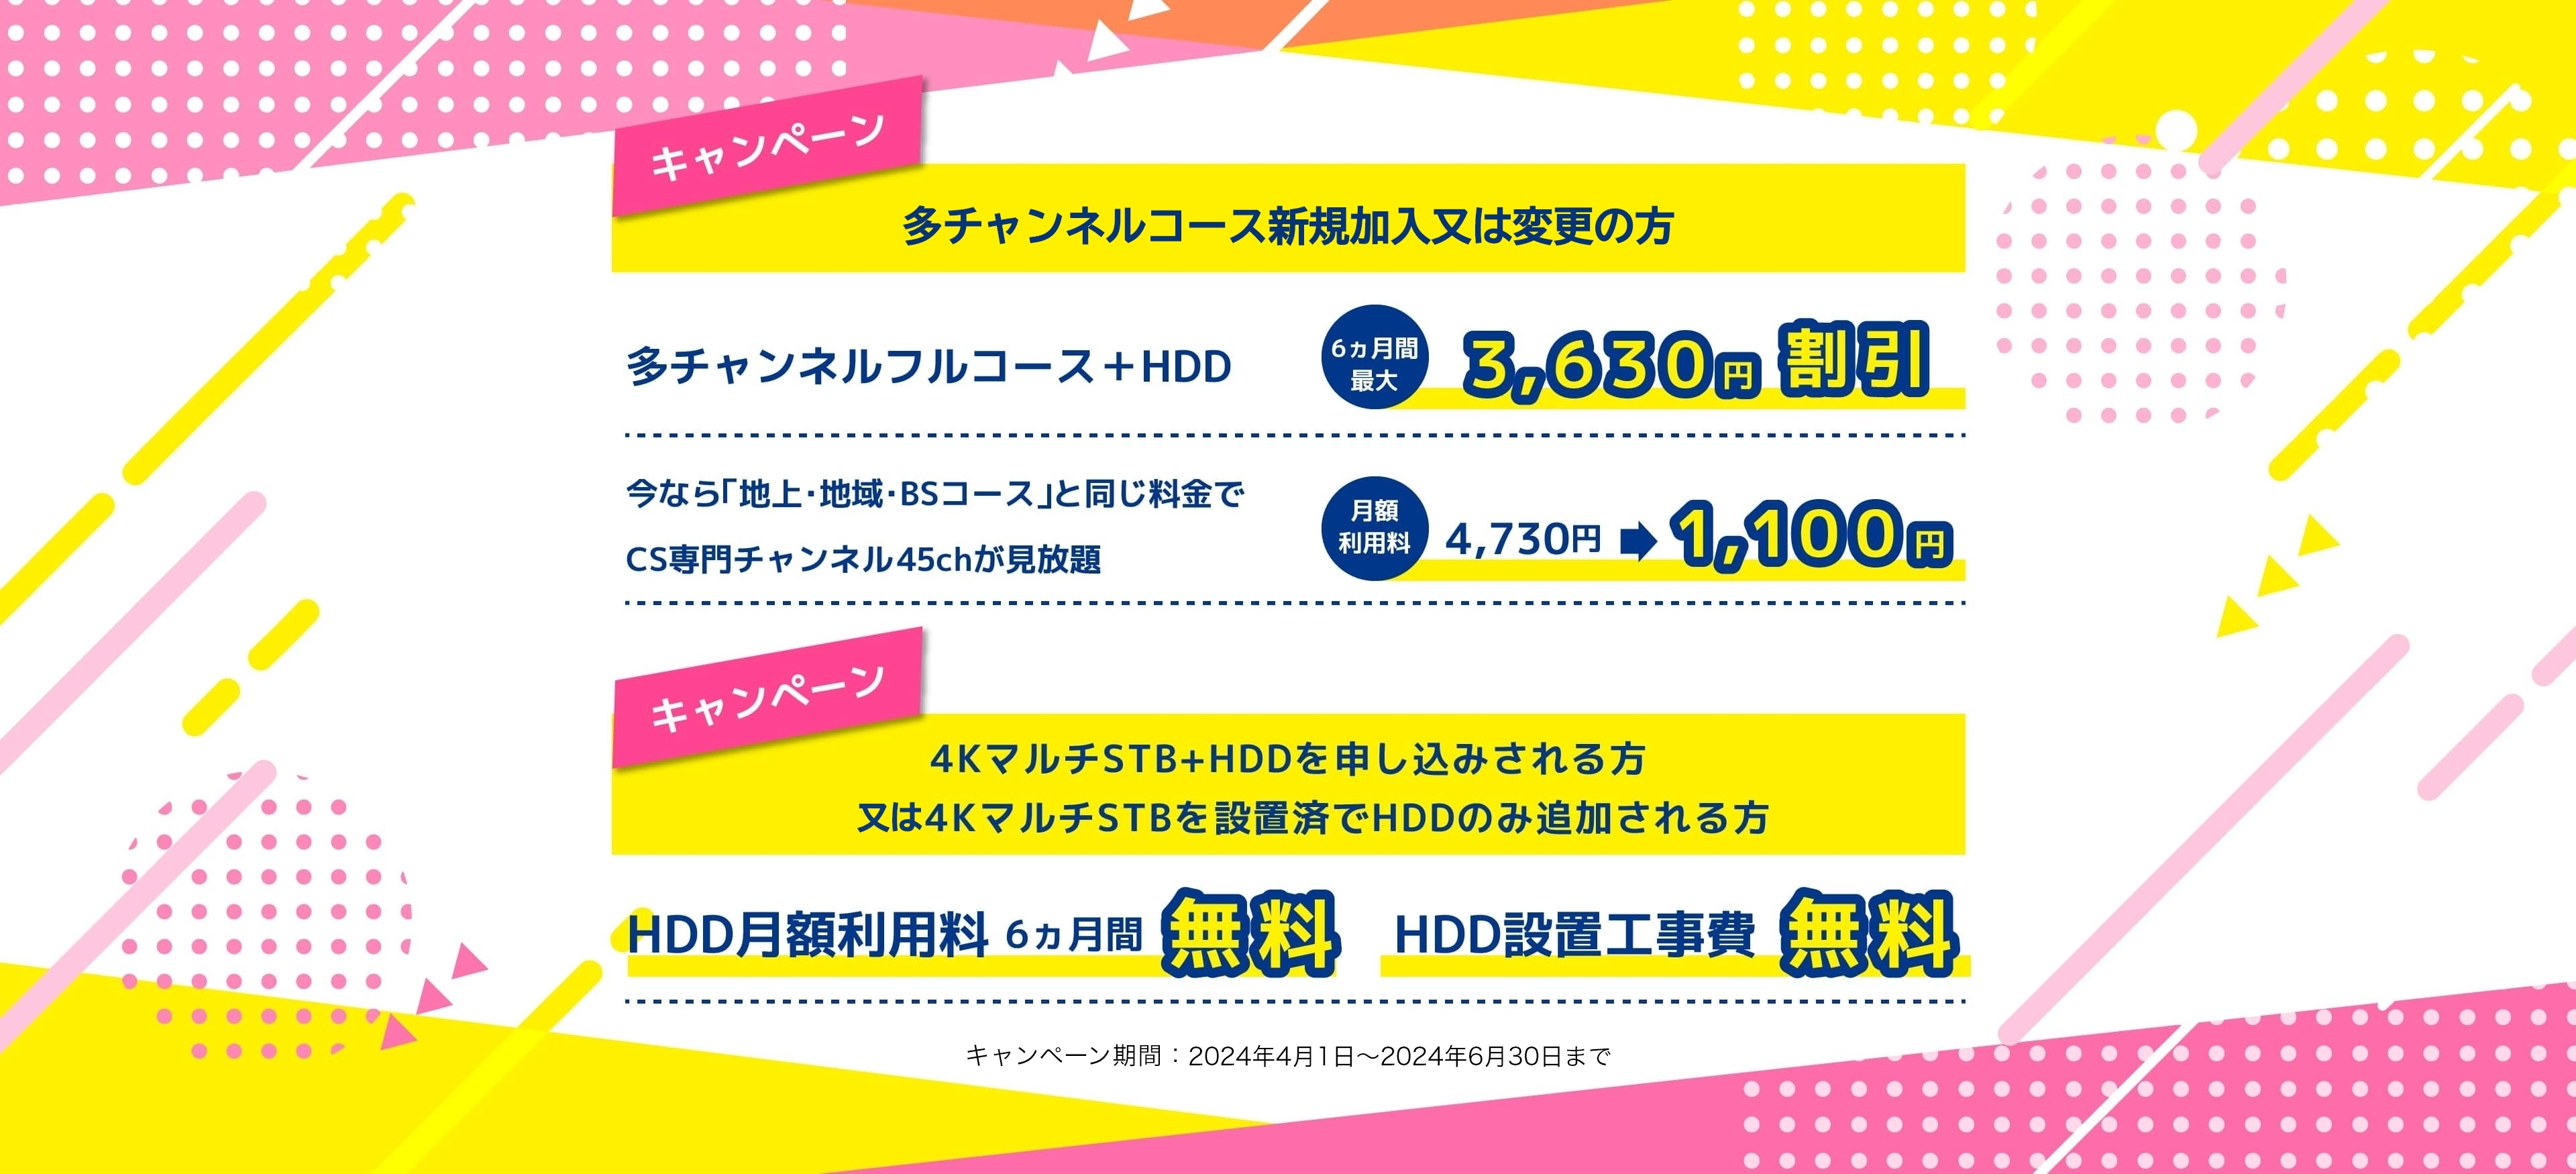 多チャンネルコース新規加入又は変更の方 多チャンネルフルコース＋HDD 6ヵ月間最大3,630円割引